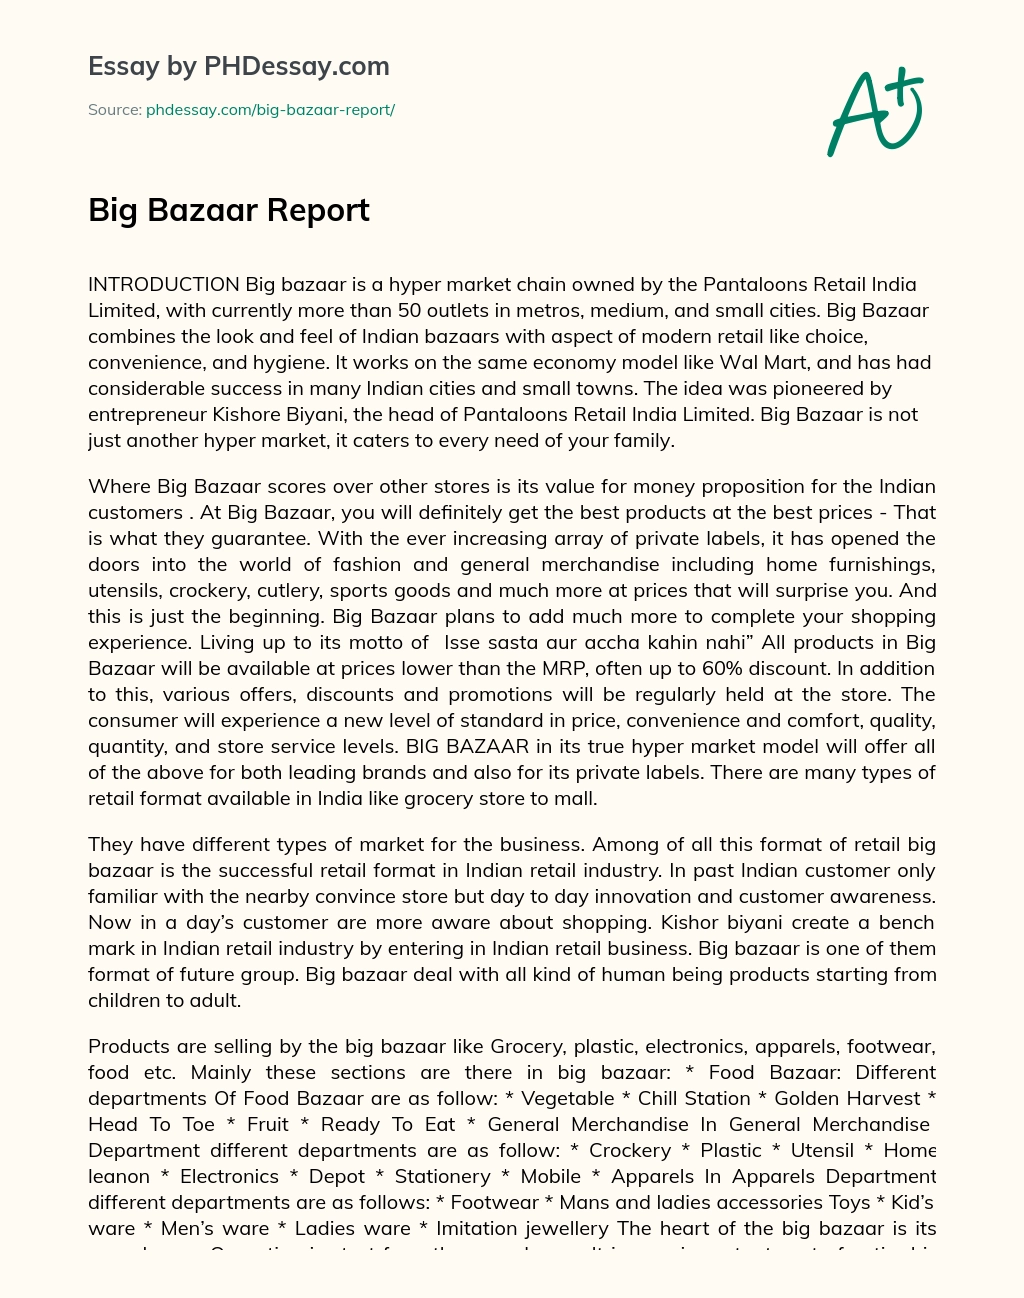 Big Bazaar Report essay